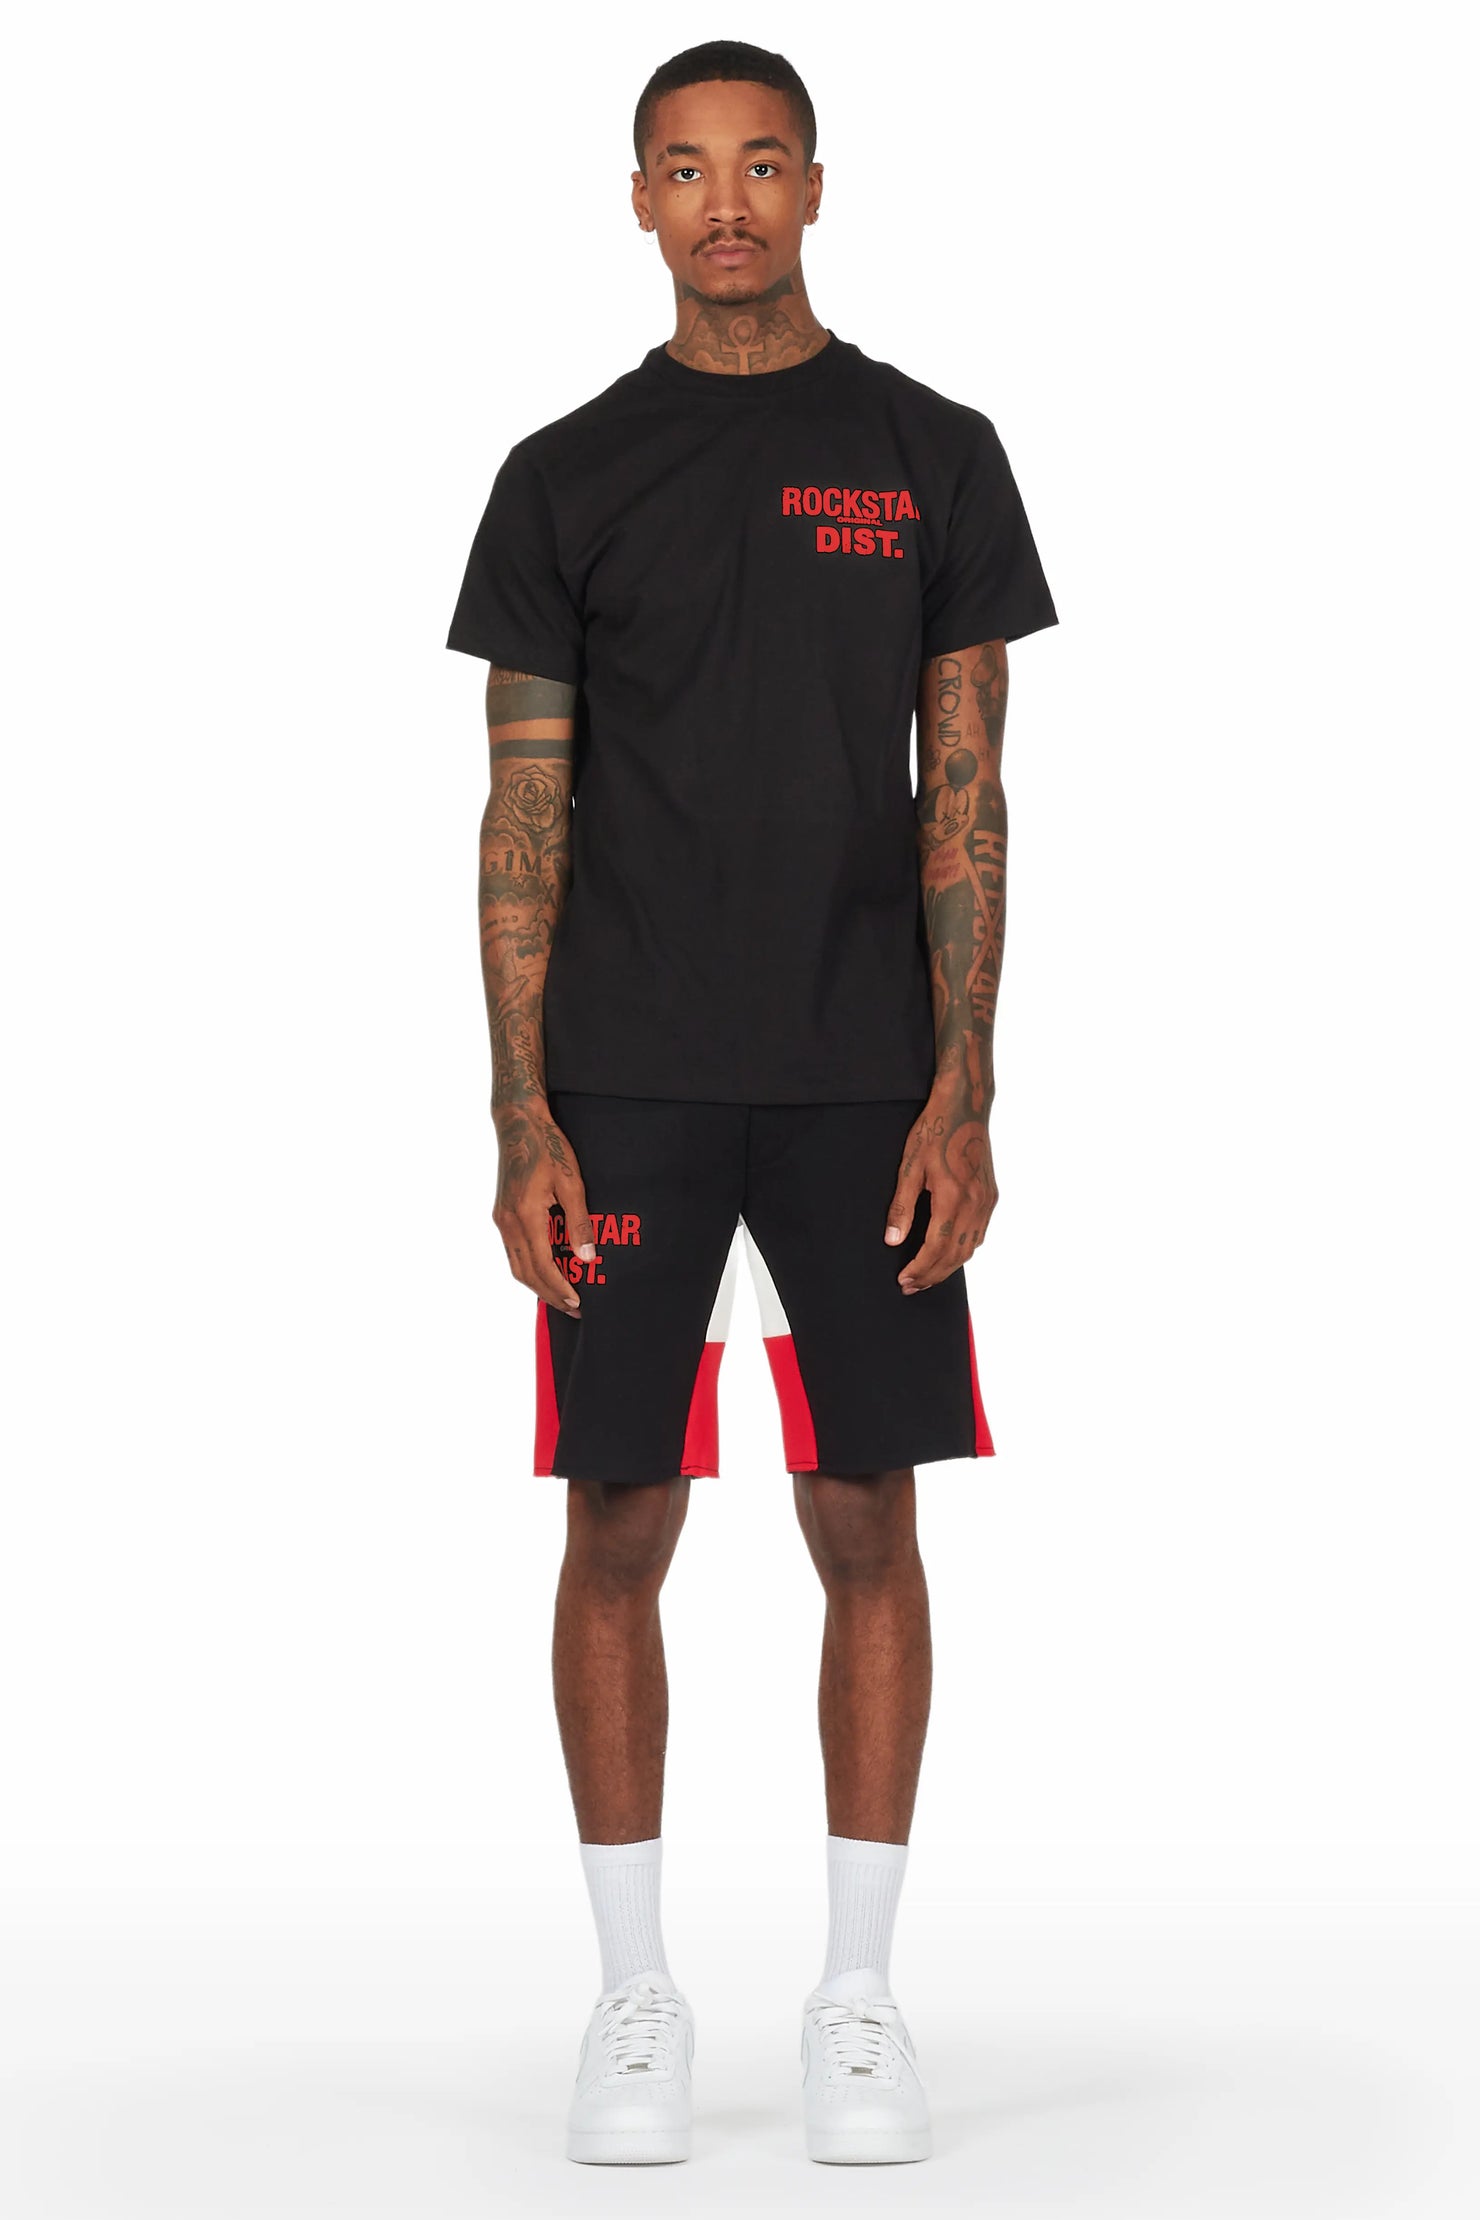 Buck 3.0 Black T-Shirt Short Set